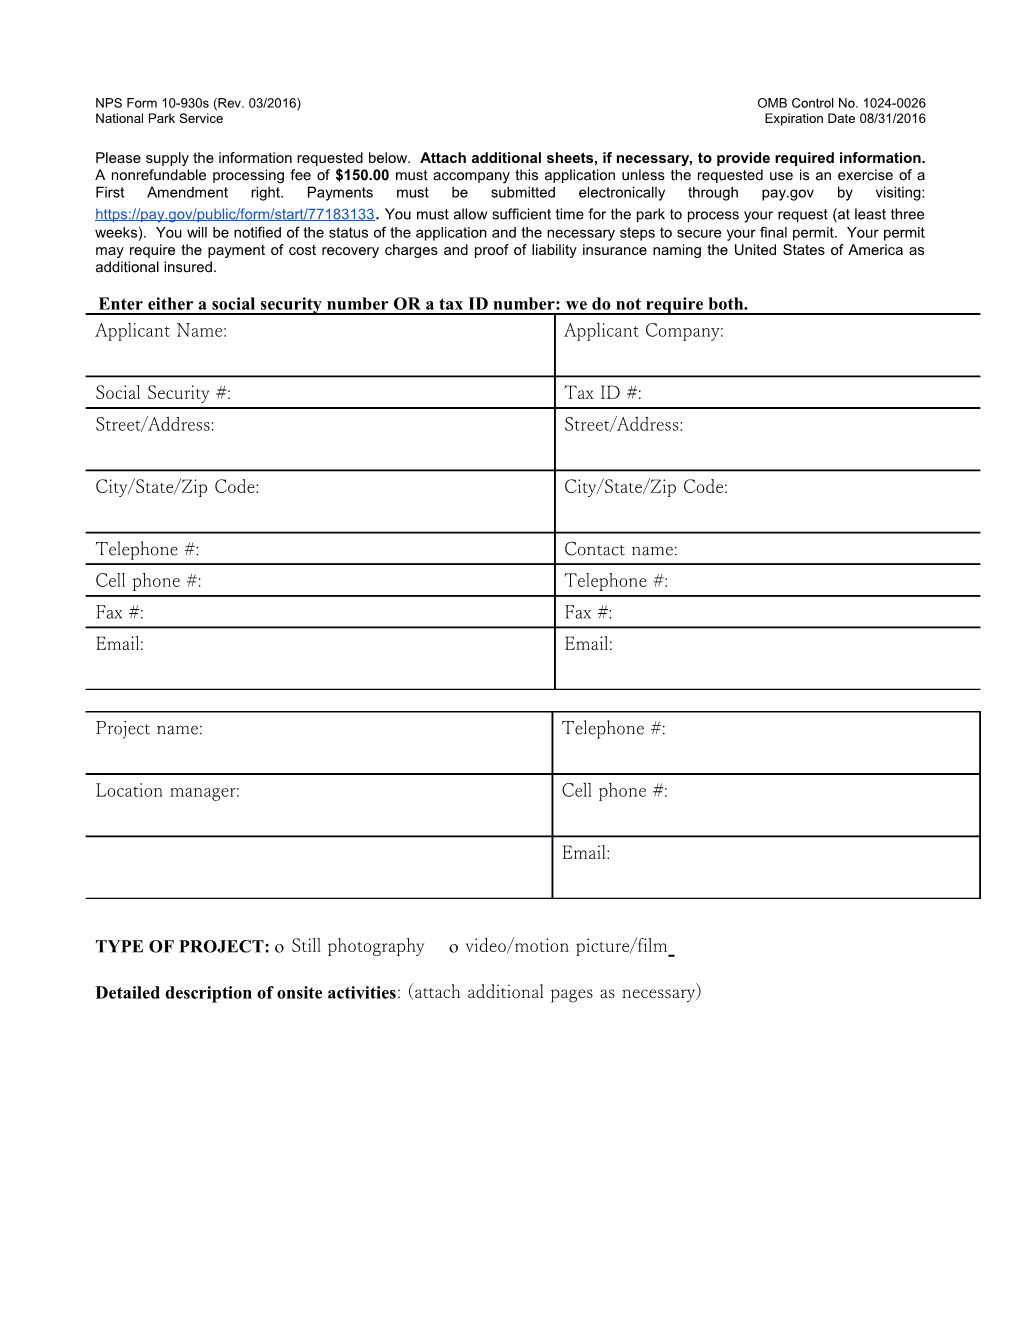 NPS Form 10-930S (Rev. 03/2016)OMB Control No. 1024-0026